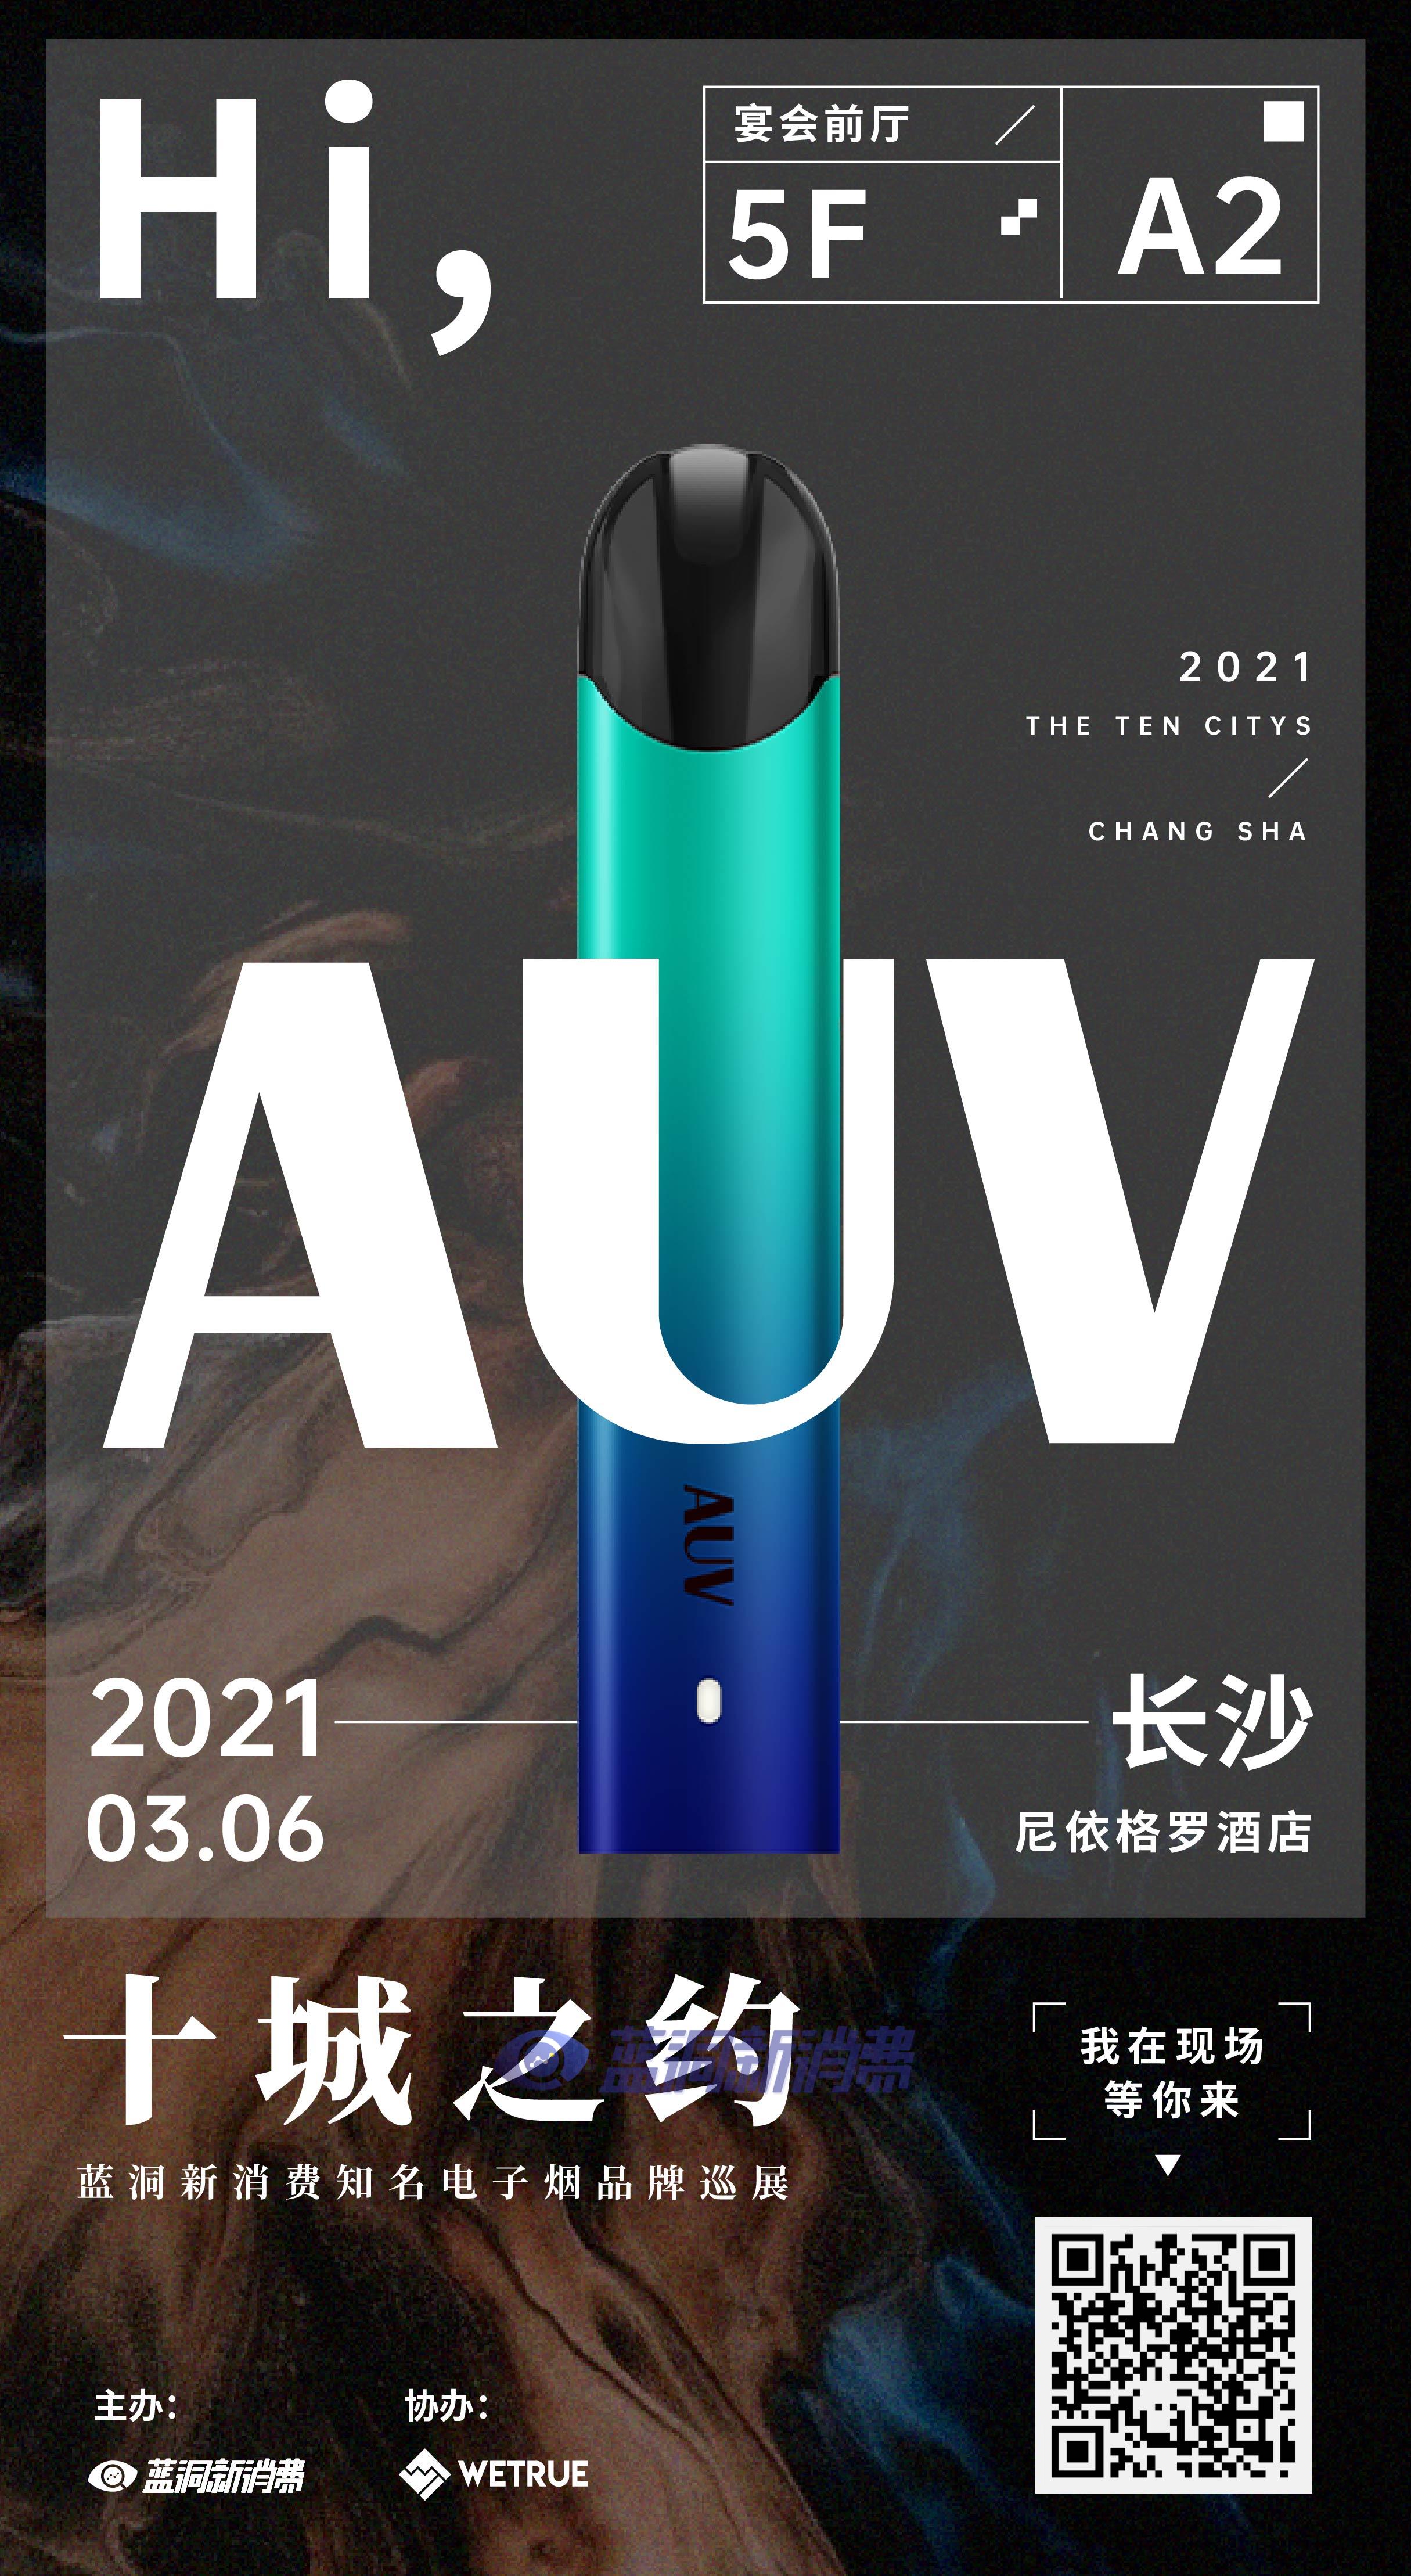 蓝洞电子烟巡展之长沙站品牌巡礼:auv电子烟